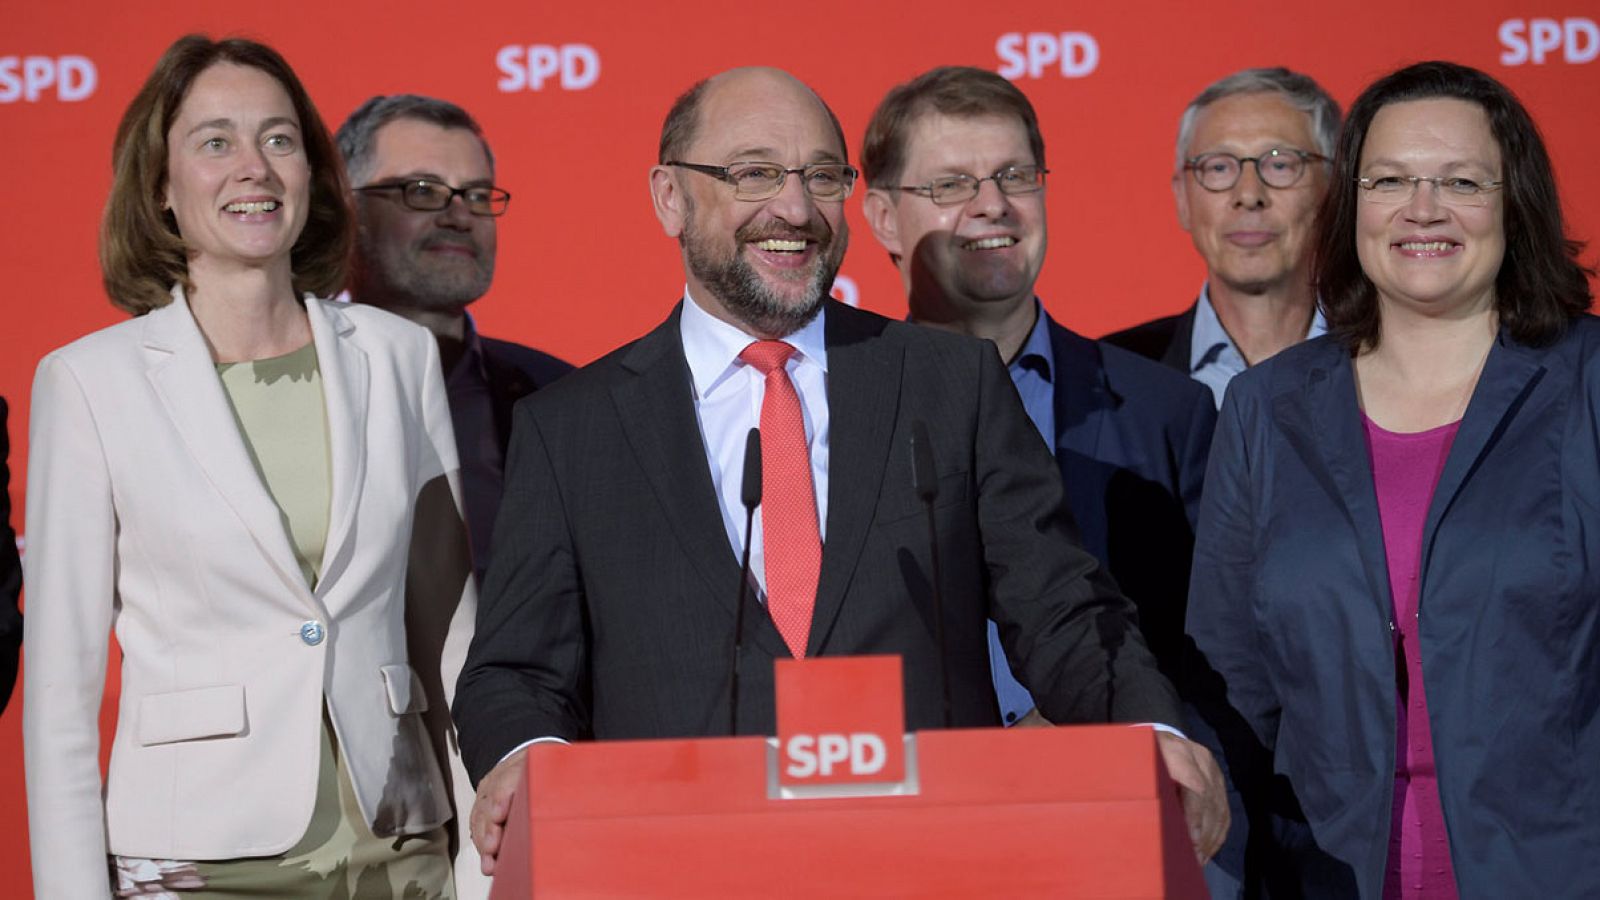 El líder del Partido Socialdemócrata alemán (SPD), Martin Schulz, reacciona a los resultados de su partido en las elecciones de Baja Sajonia